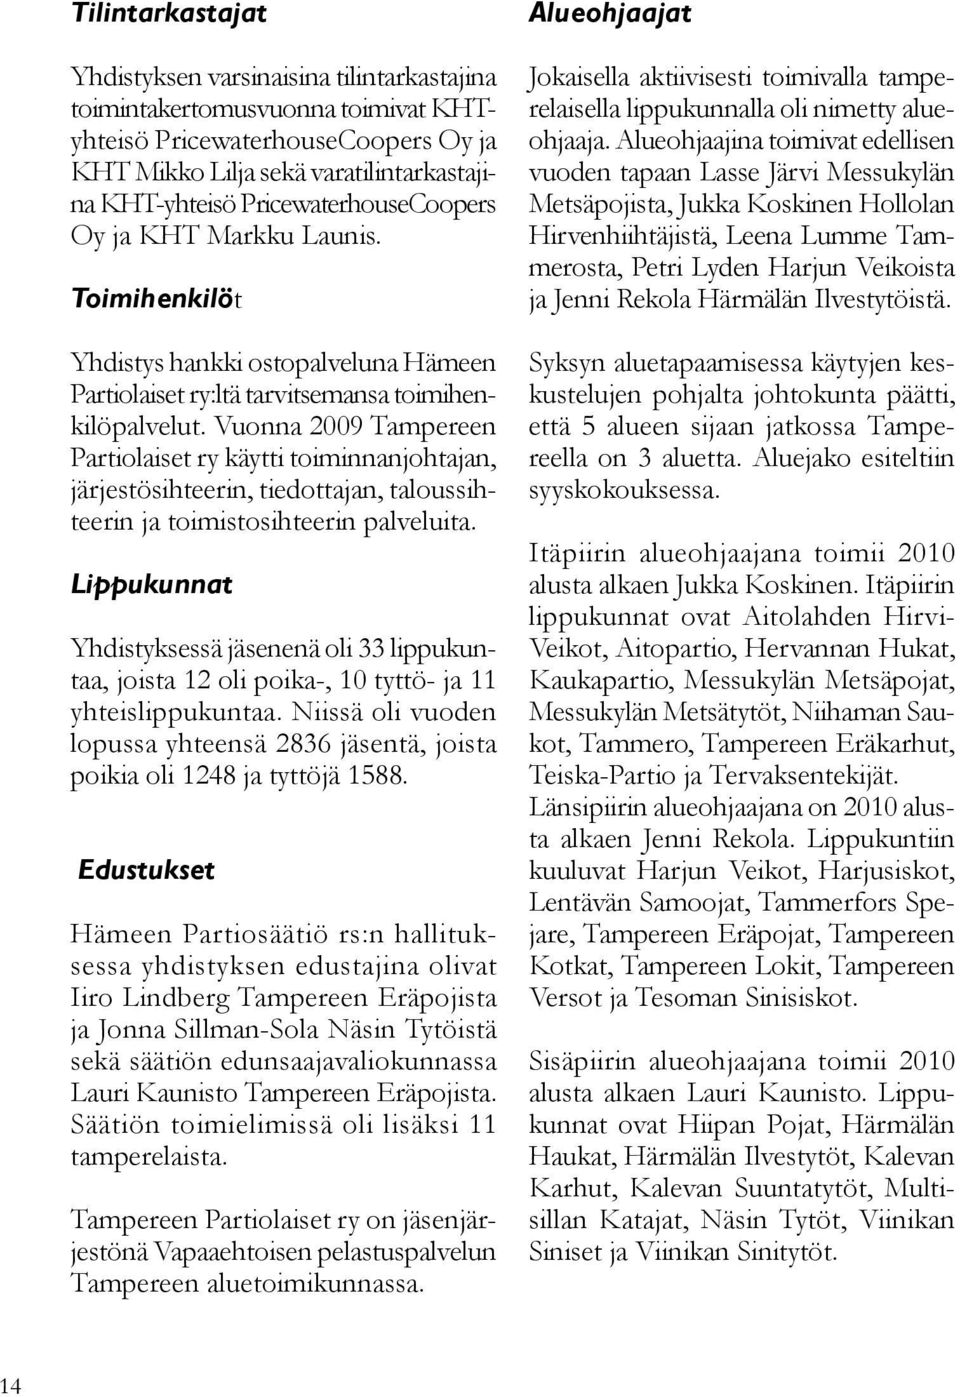 Vuonna 2009 Tampereen Partiolaiset ry käytti toiminnanjohtajan, järjestösihteerin, tiedottajan, taloussihteerin ja toimistosihteerin palveluita.